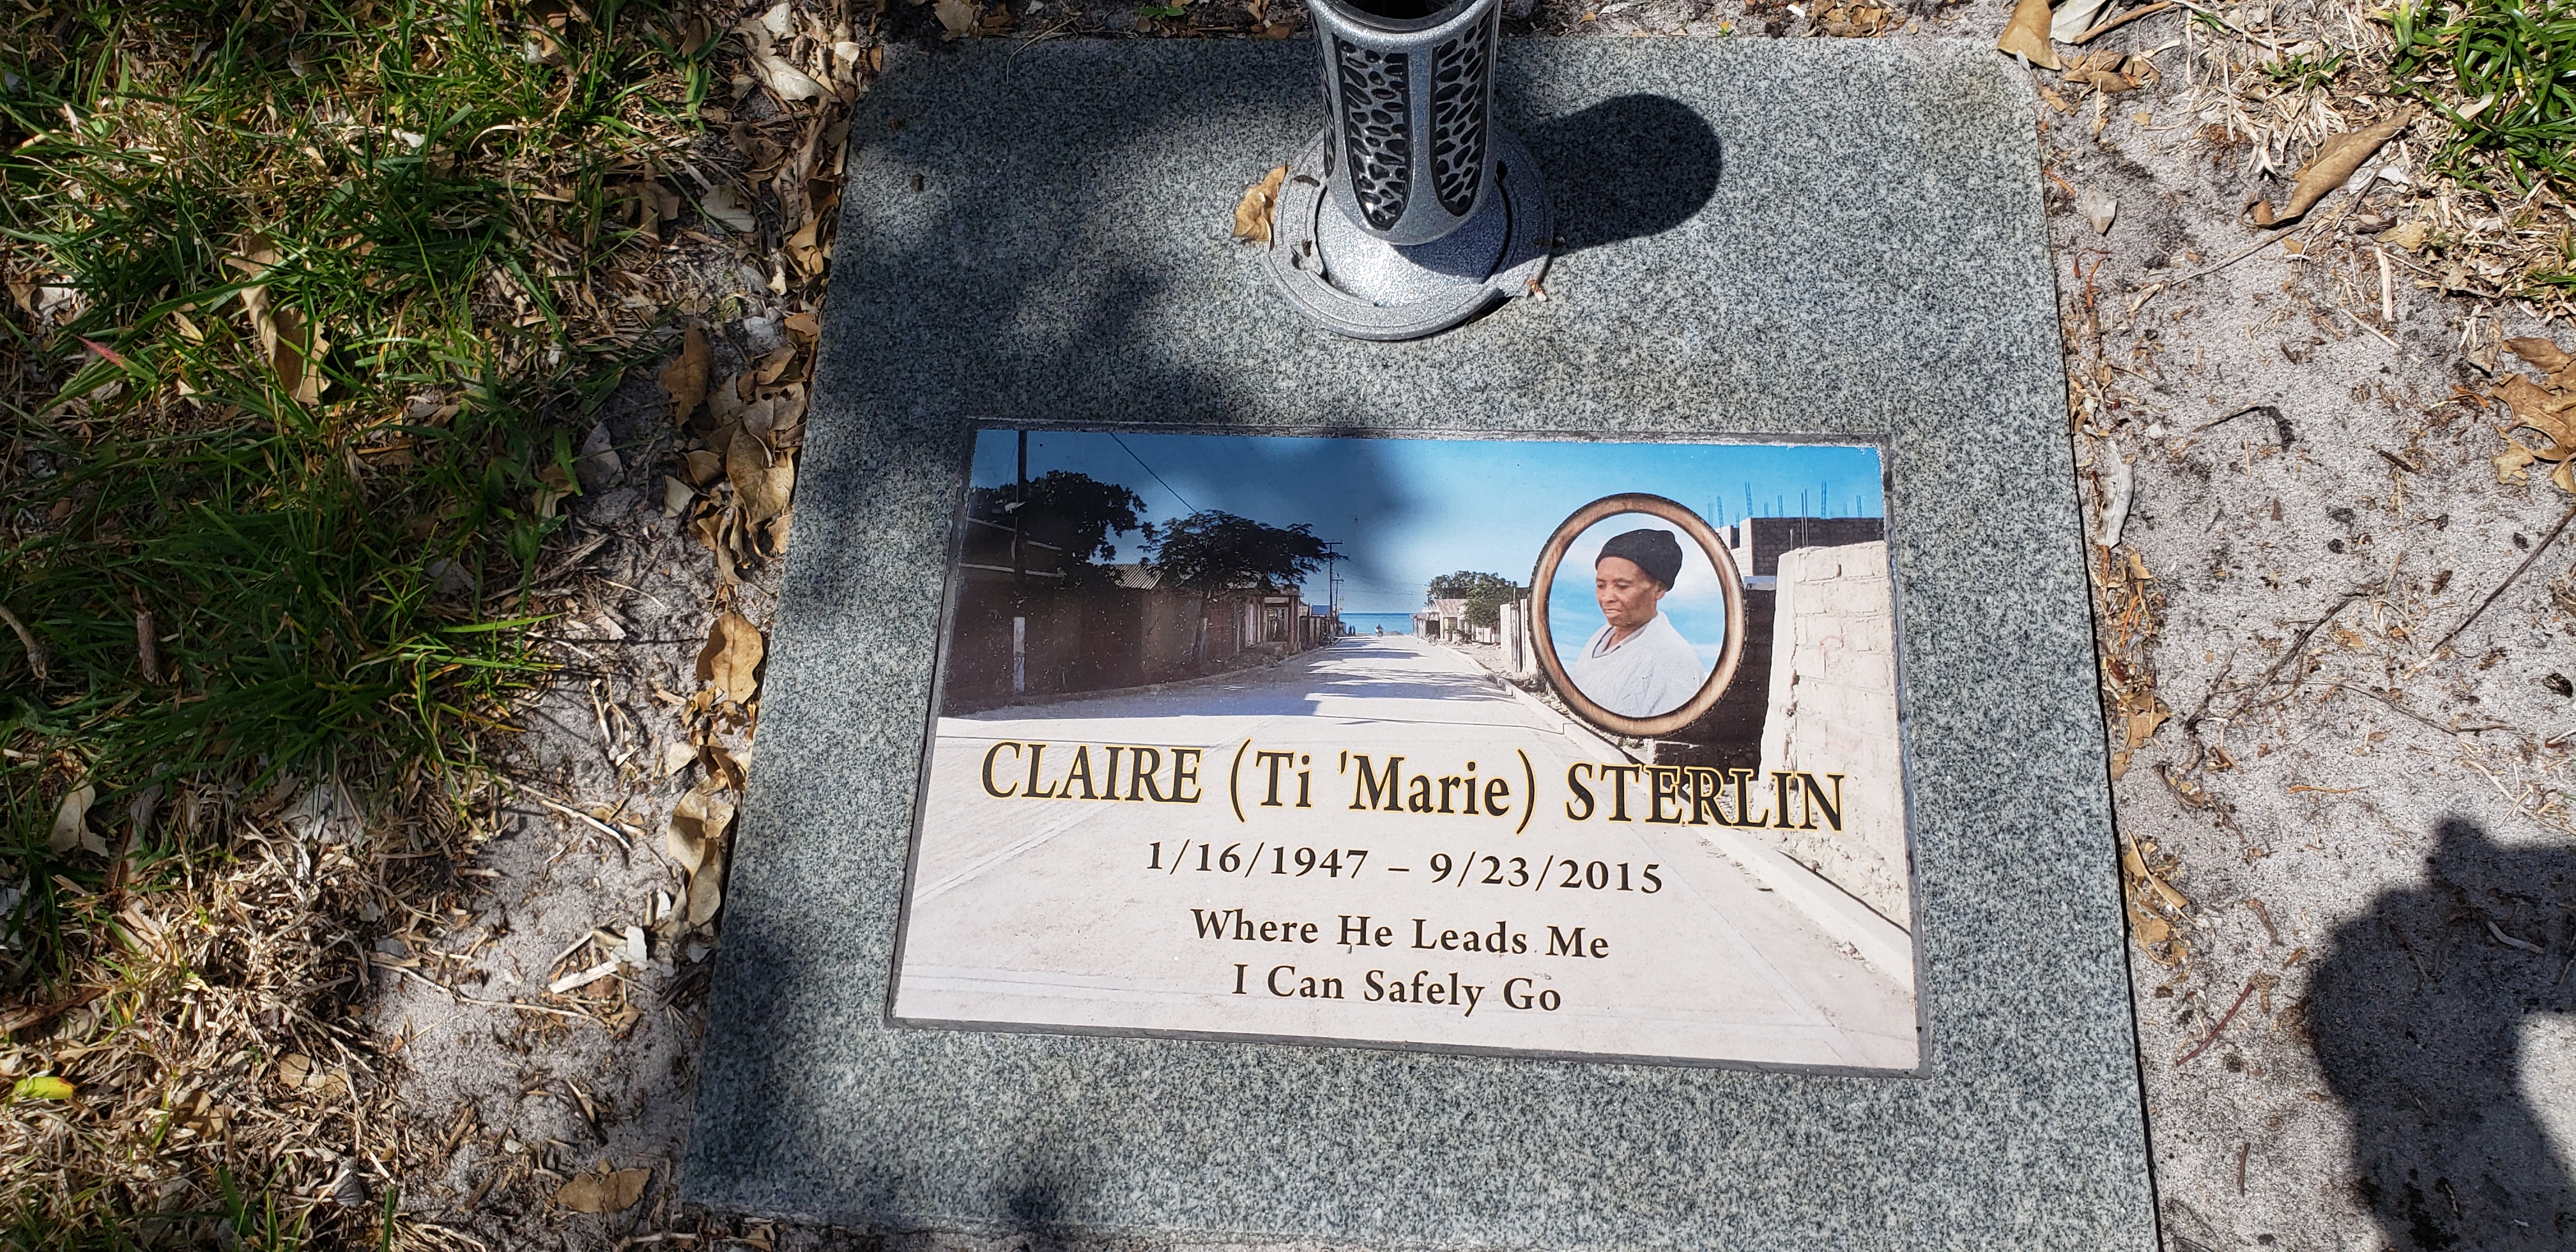 Claire "Ti'Marie" Sterlin